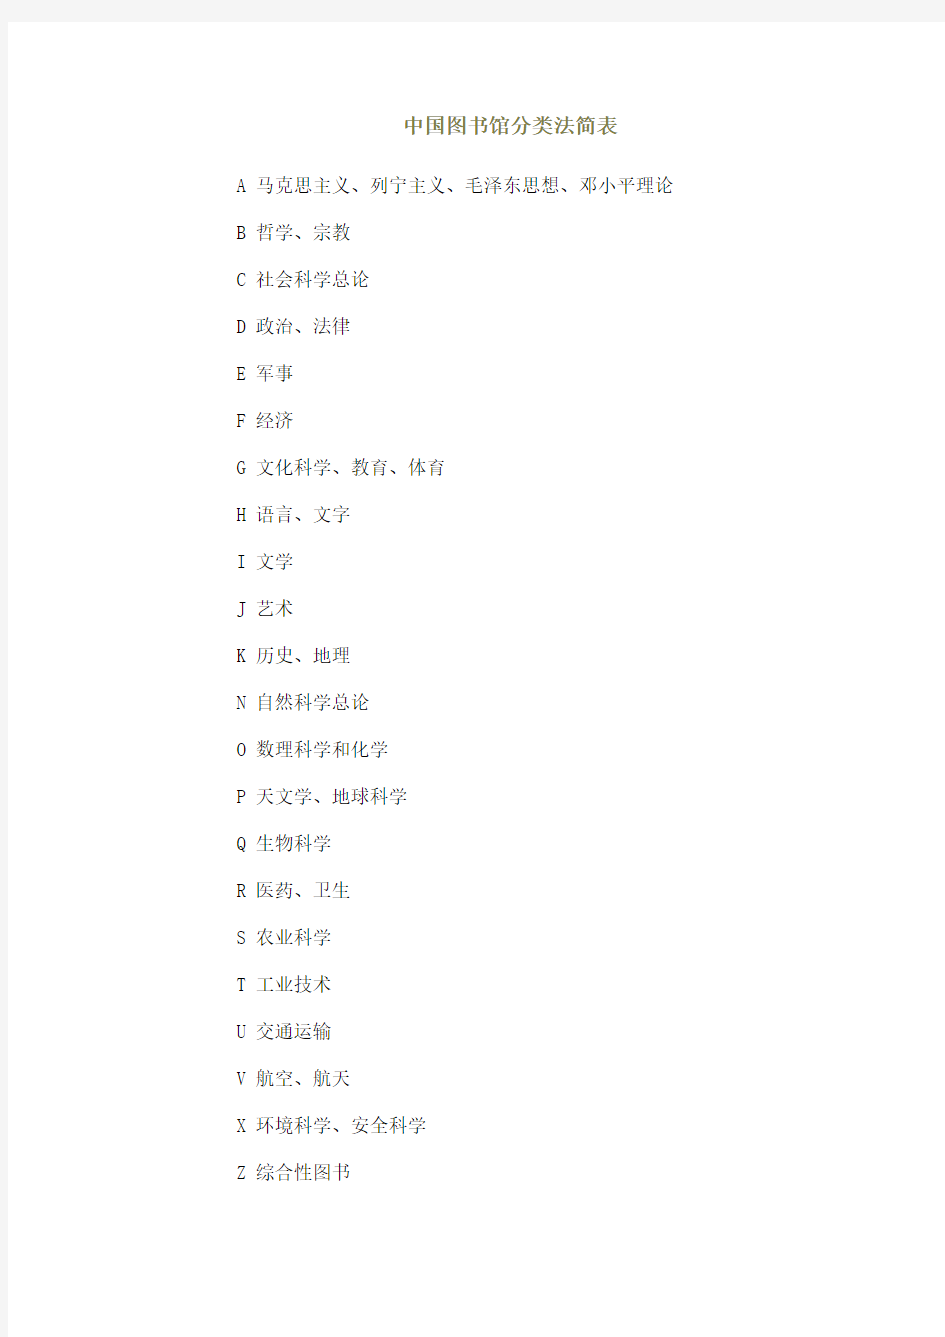 中国图书馆分类法简表